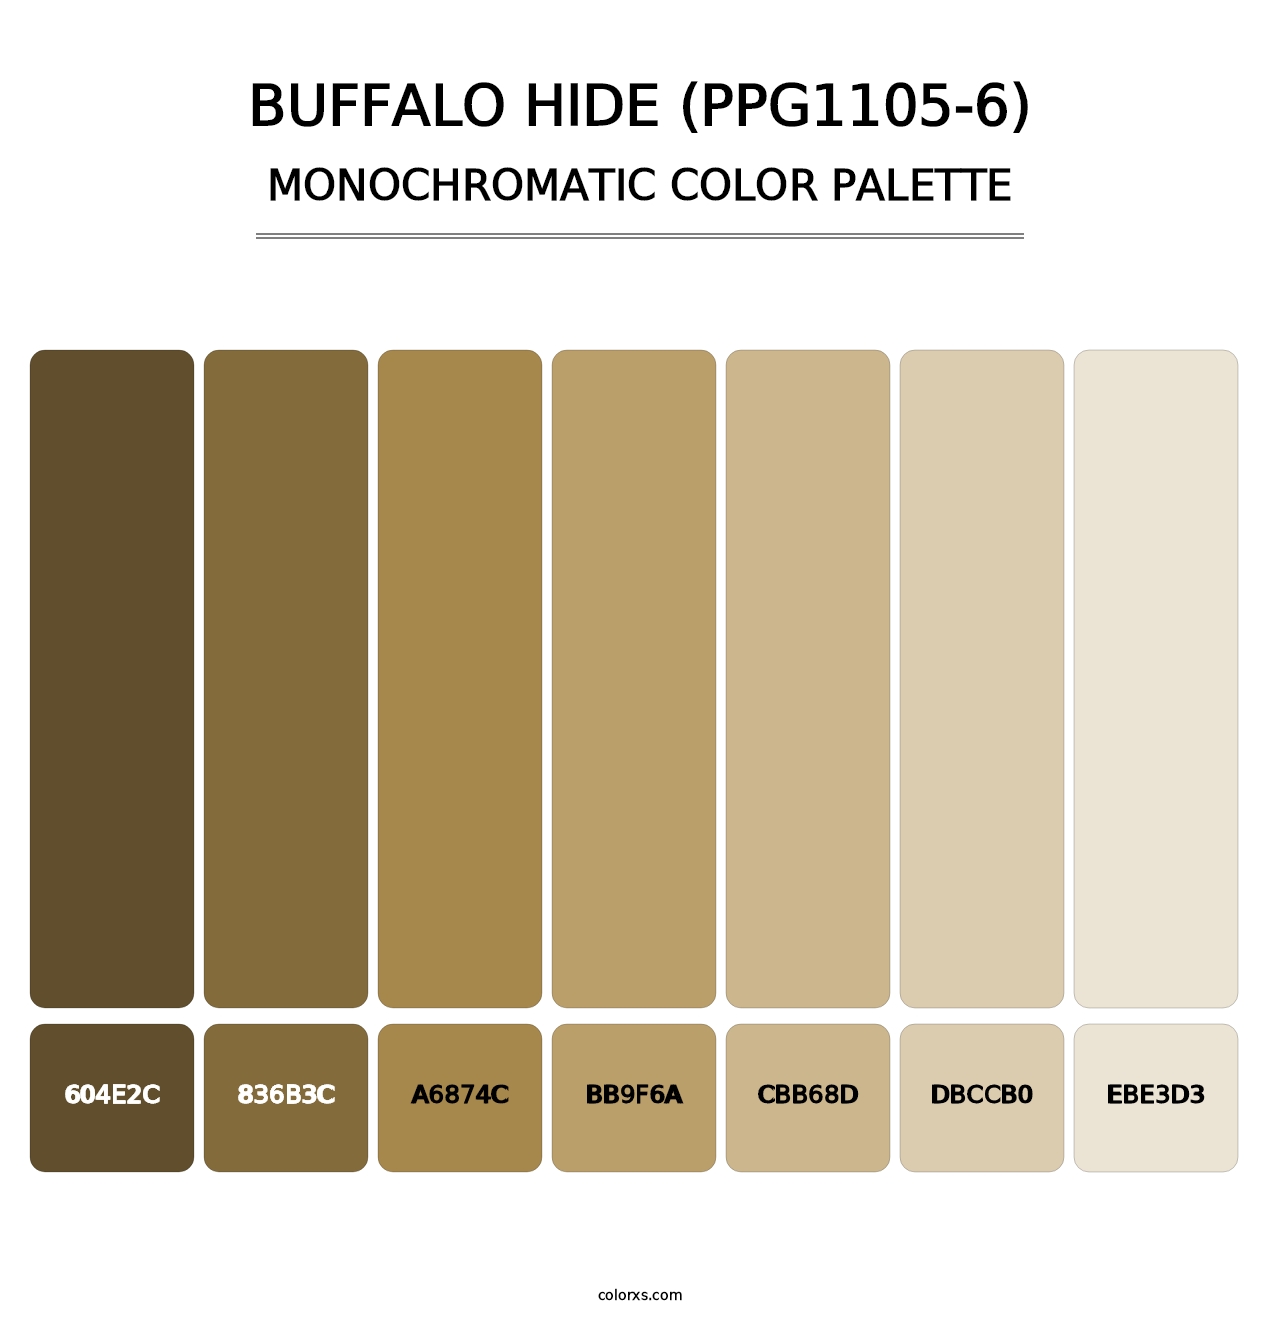 Buffalo Hide (PPG1105-6) - Monochromatic Color Palette